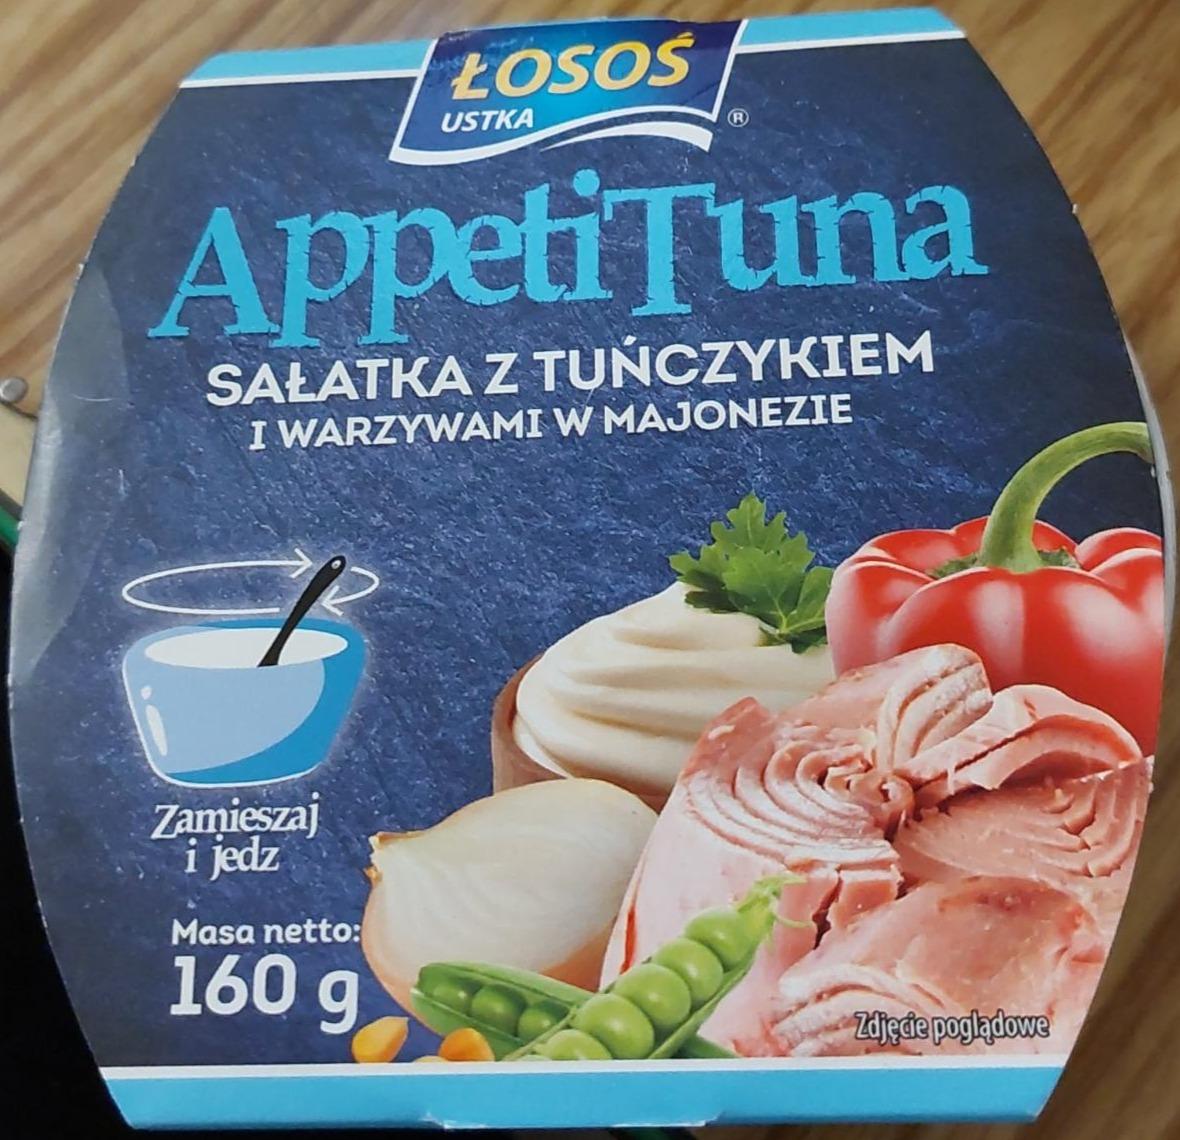 Fotografie - Sałatka z tuńczykiem i warzywami w majonezie Łosoś Ustka